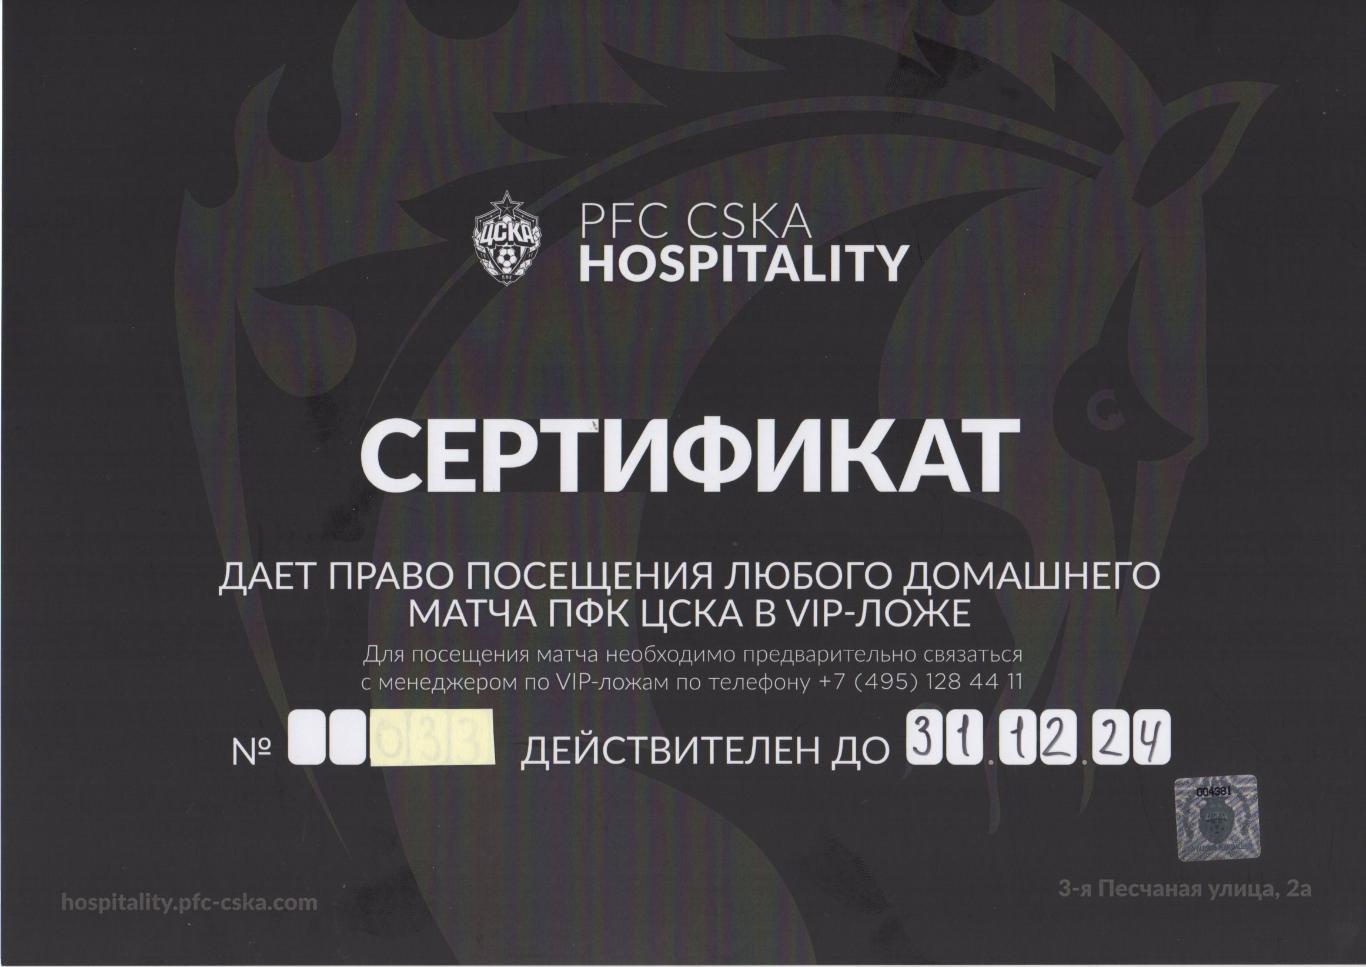 Сертификат на посещение любого домашнего матча ПФК ЦСКА в VIP-ложе.